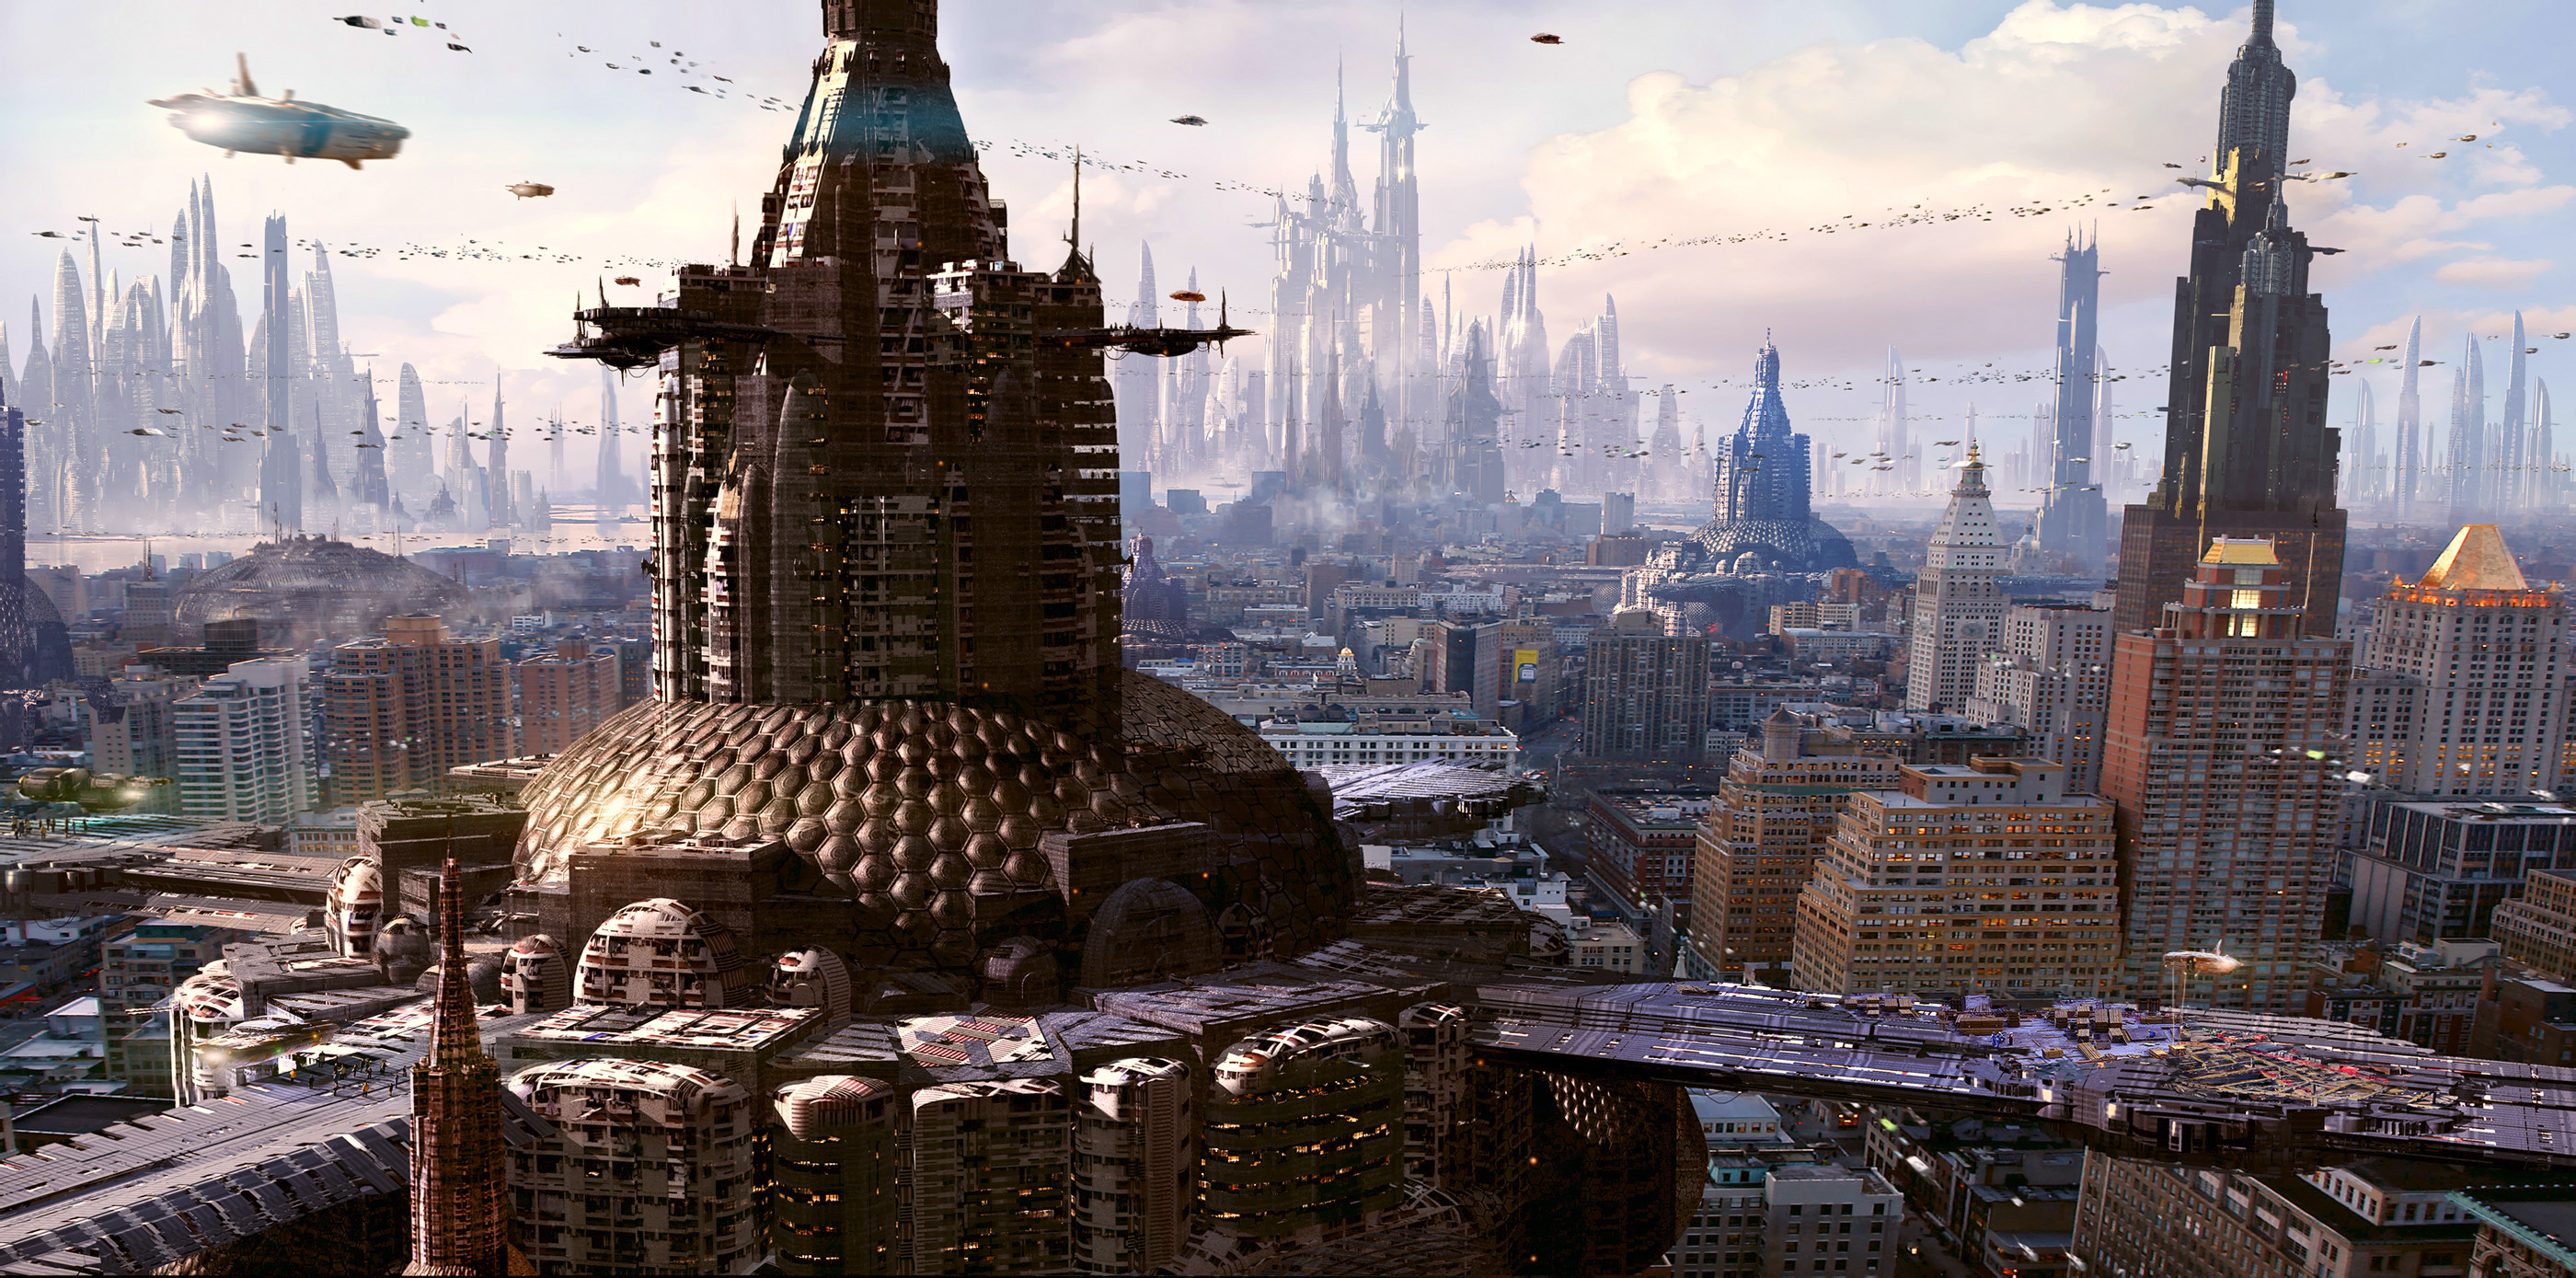 2800x1389 Download wallpaper Sci Fi City with tags: PC, City, Cityscape, Skyscraper,  Futuristic City